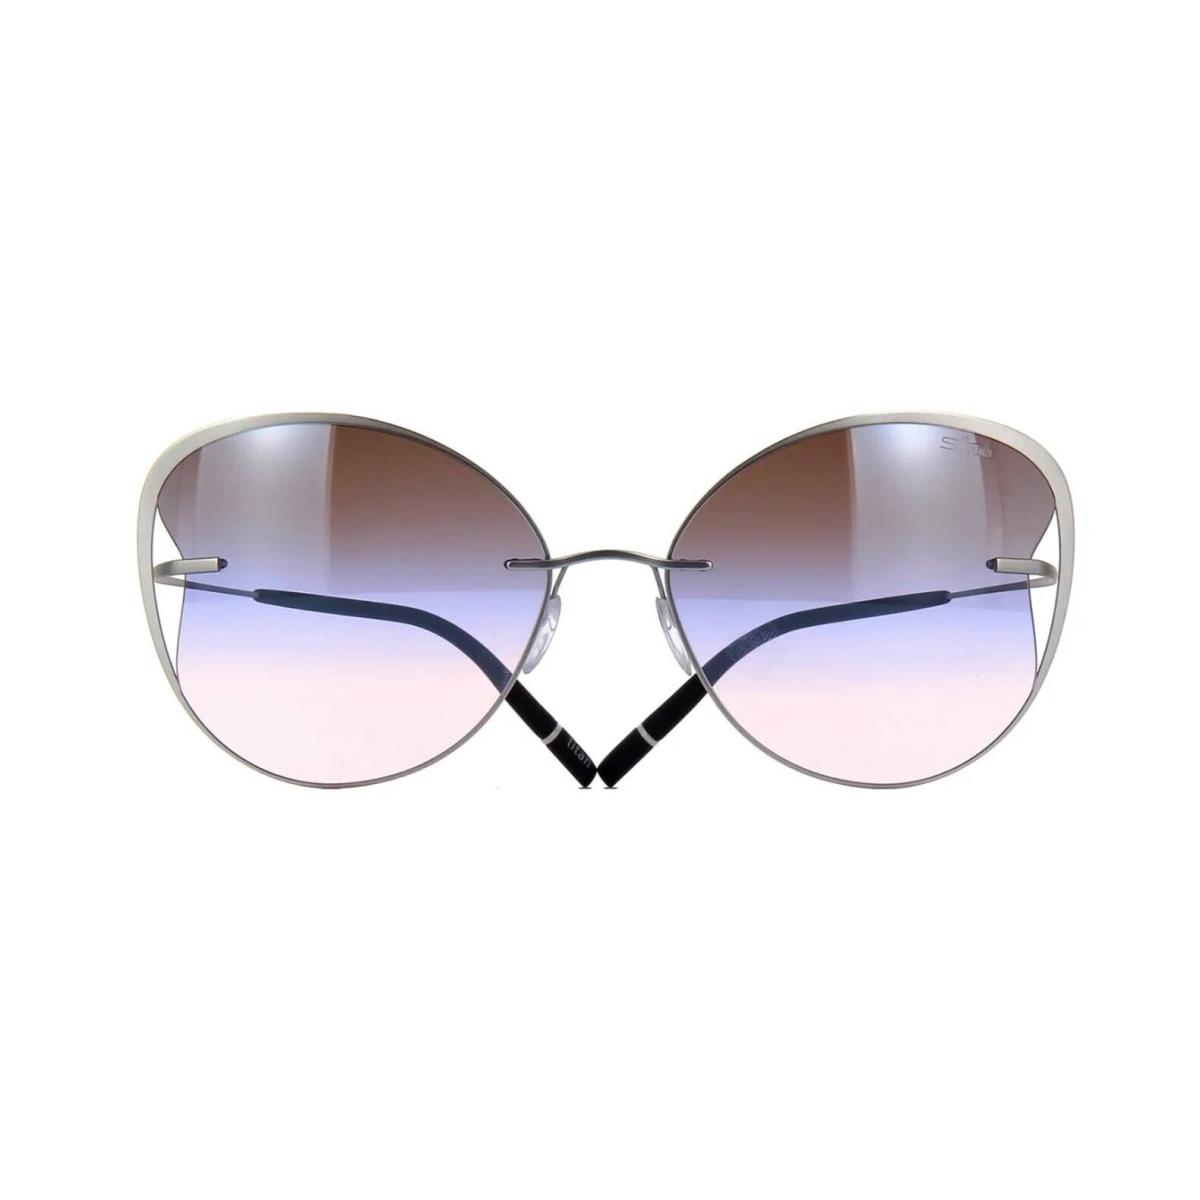 Silhouette Titan Accent Shades 8173 Silver/tricolor Lavander 7000 Sunglasses